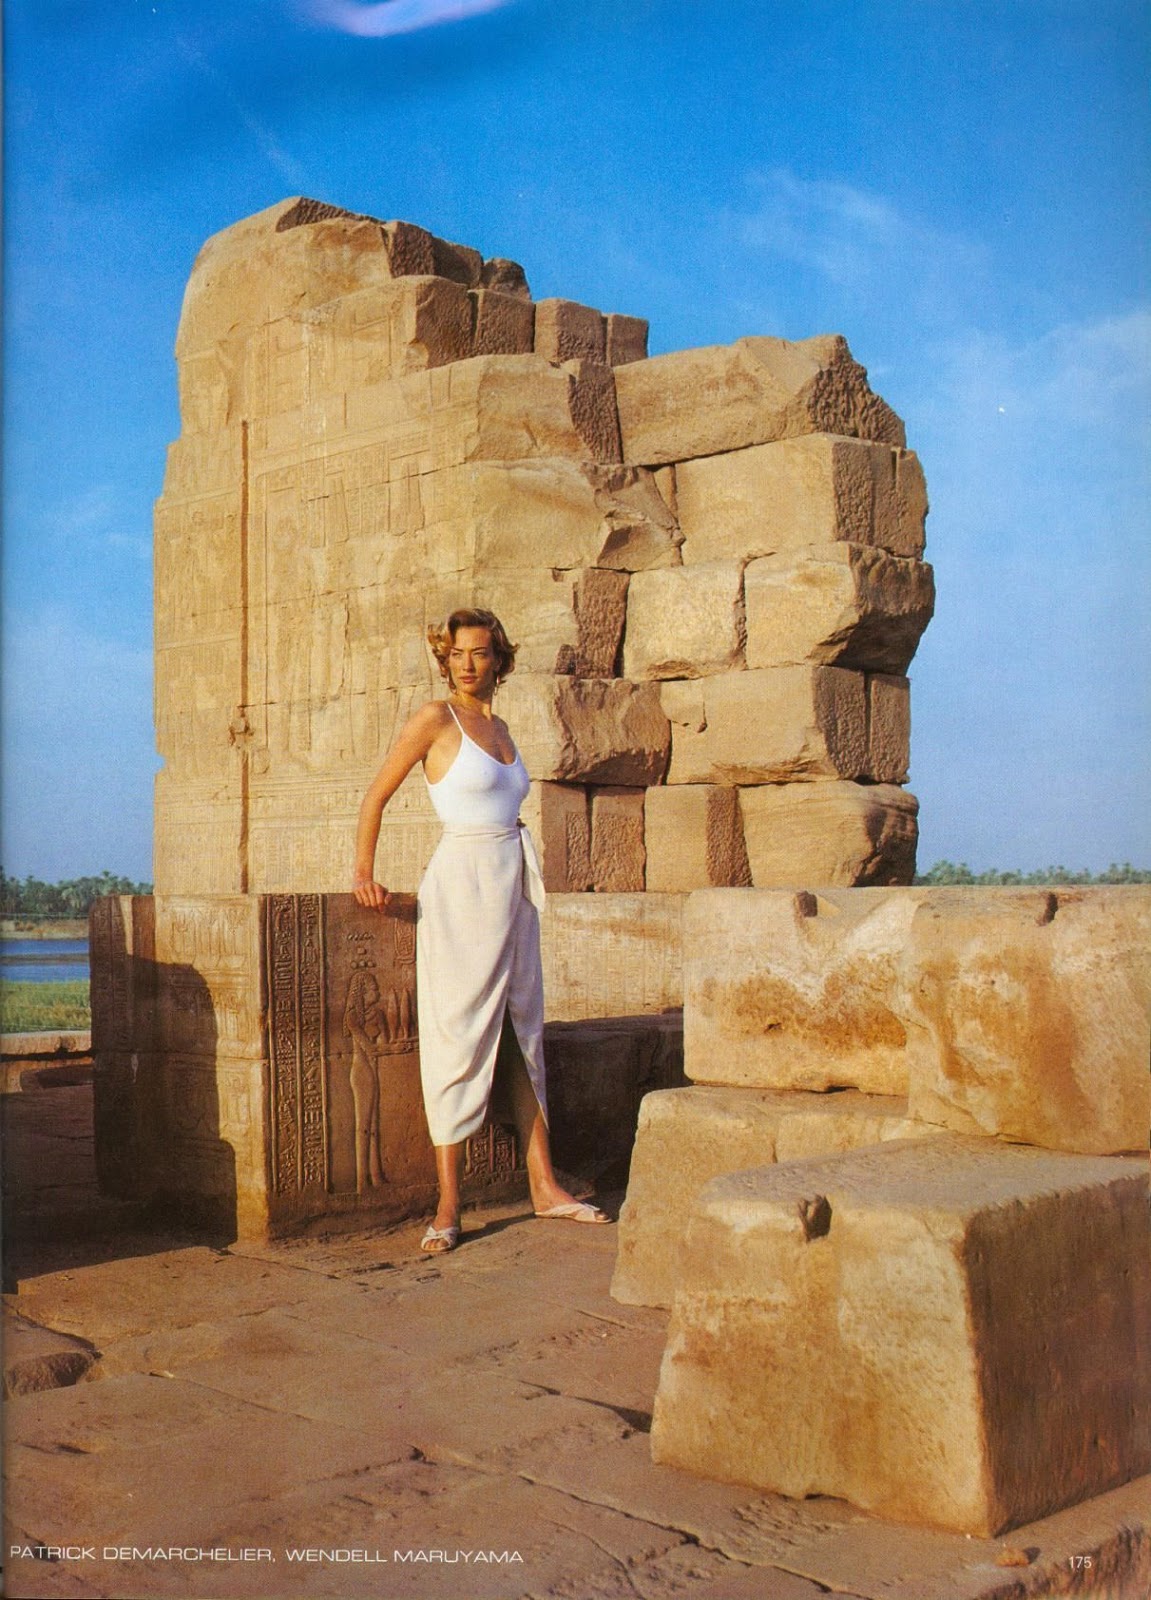 Egipto a través del lente de Patrick Demarchelier, 1993